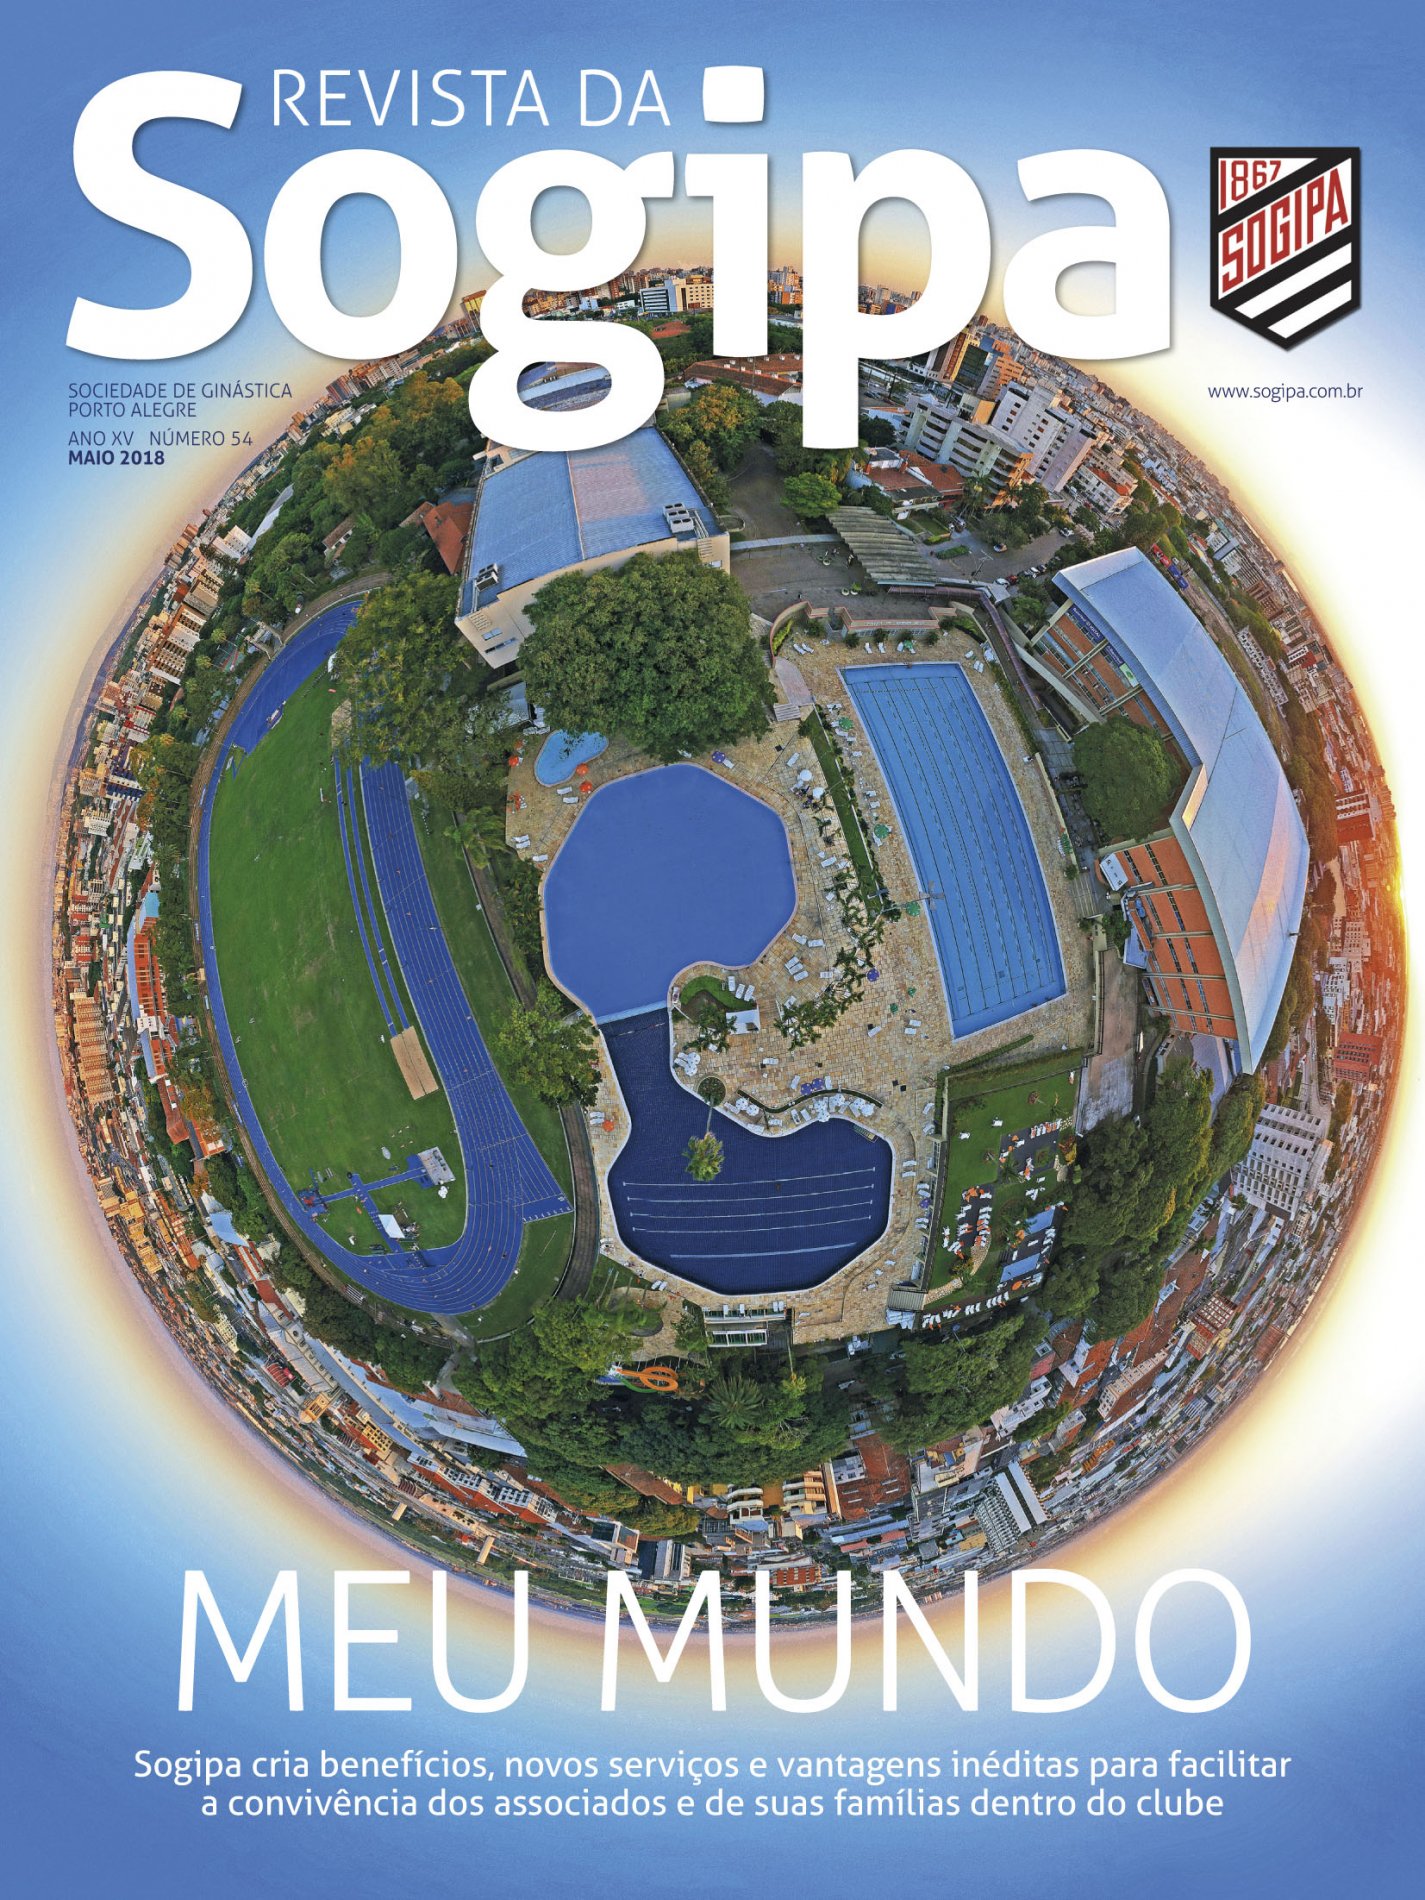 How to get to Sociedade Ginástica Porto Alegre (SOGIPA) by Bus or